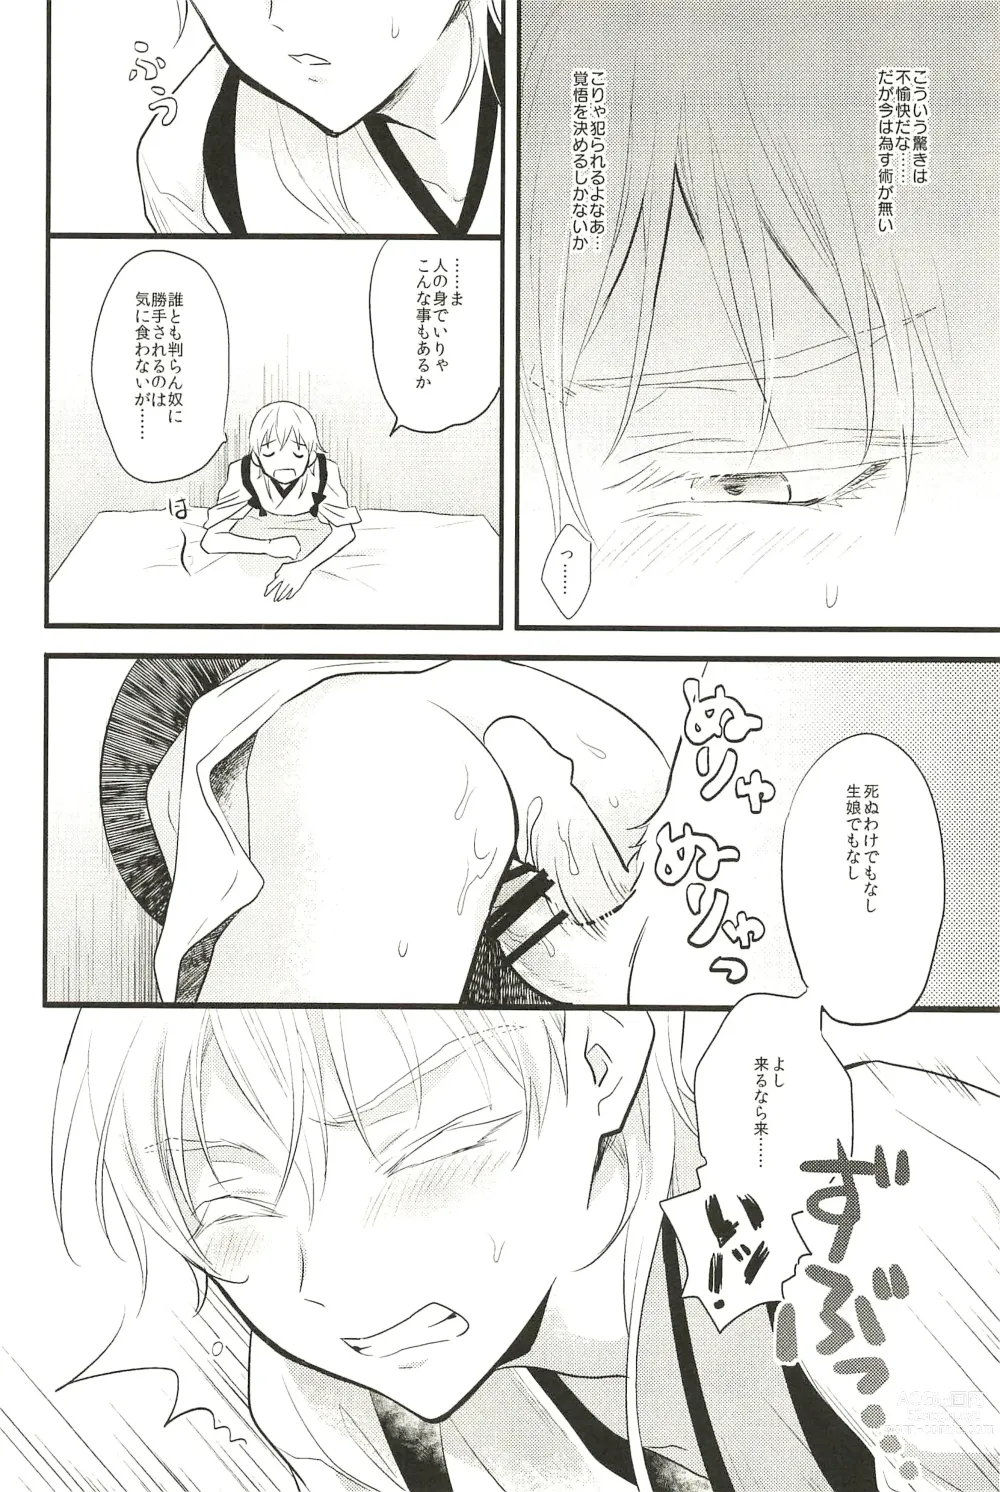 Page 10 of doujinshi Iromono Shu